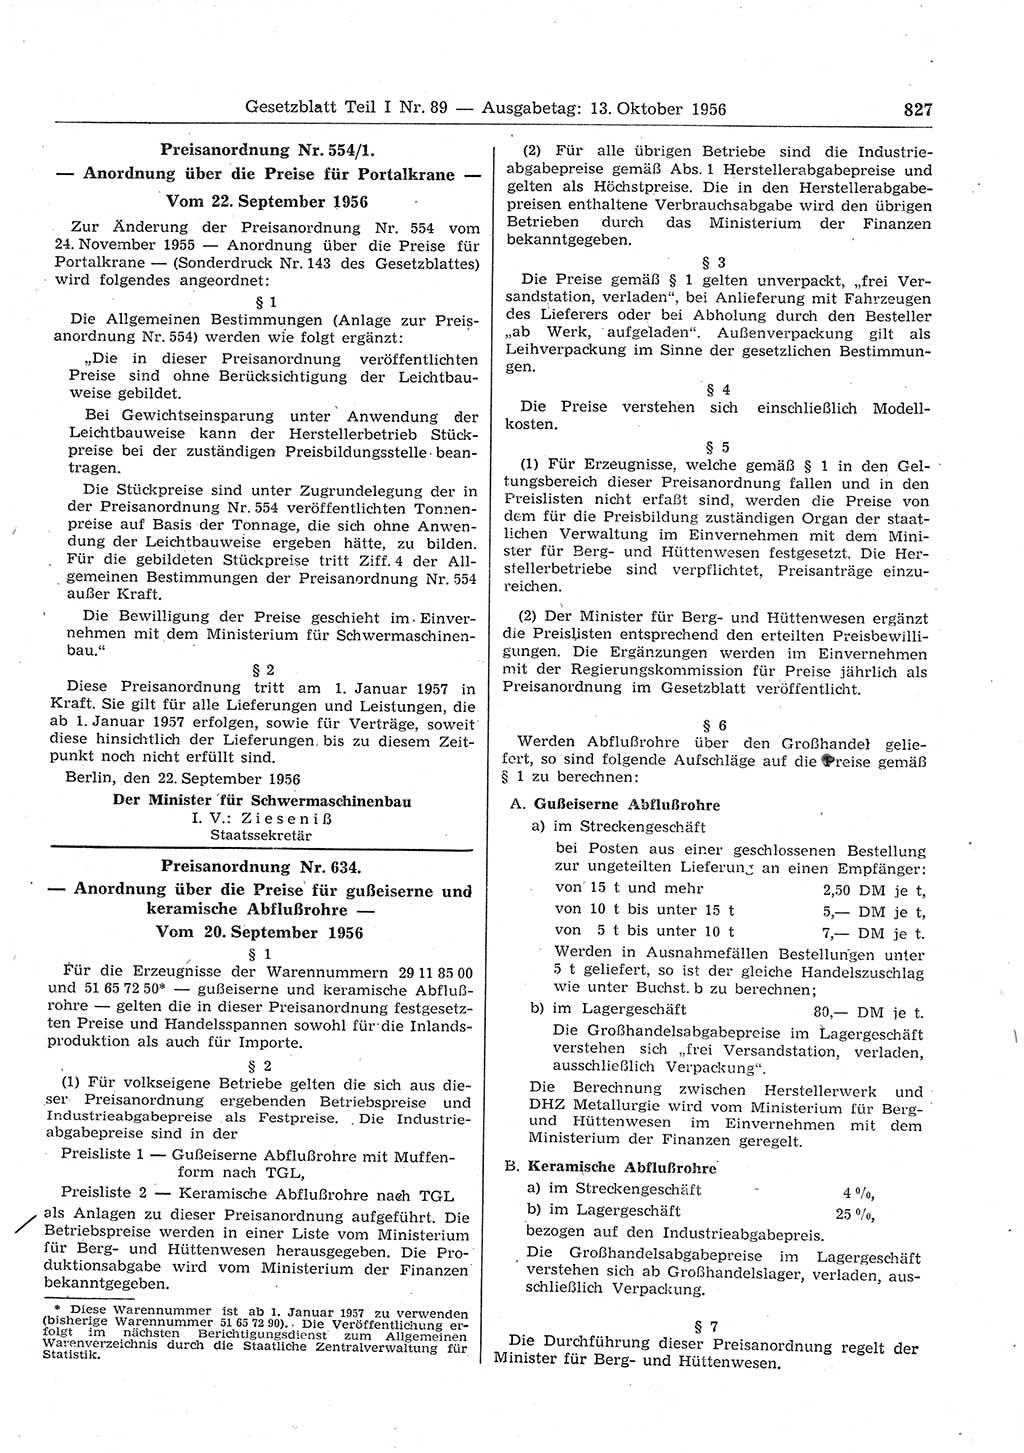 Gesetzblatt (GBl.) der Deutschen Demokratischen Republik (DDR) Teil Ⅰ 1956, Seite 827 (GBl. DDR Ⅰ 1956, S. 827)